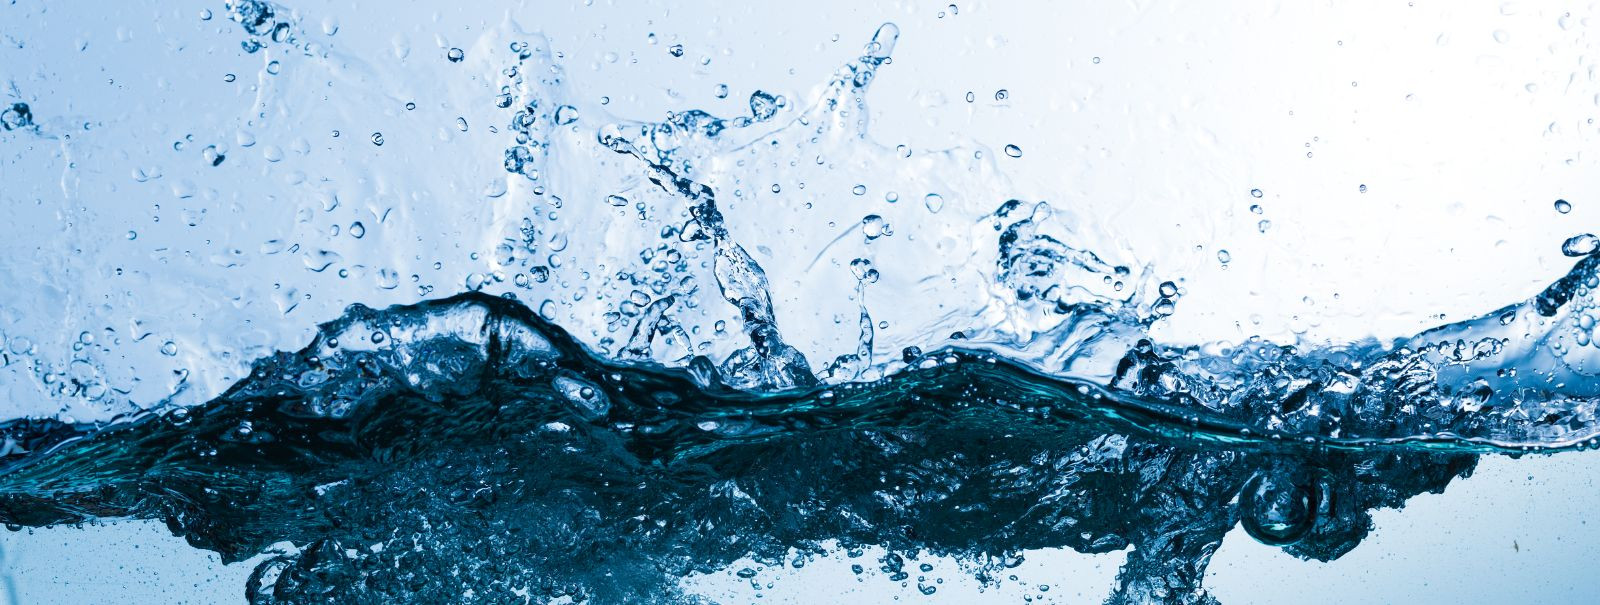 Aquatehnika OÜs mõistame, et vesi on elu alus. Meie teekond algas üle kahe aastakümne tagasi missiooniga tagada, et igal majapidamisel oleks juurdepääs puhtale,